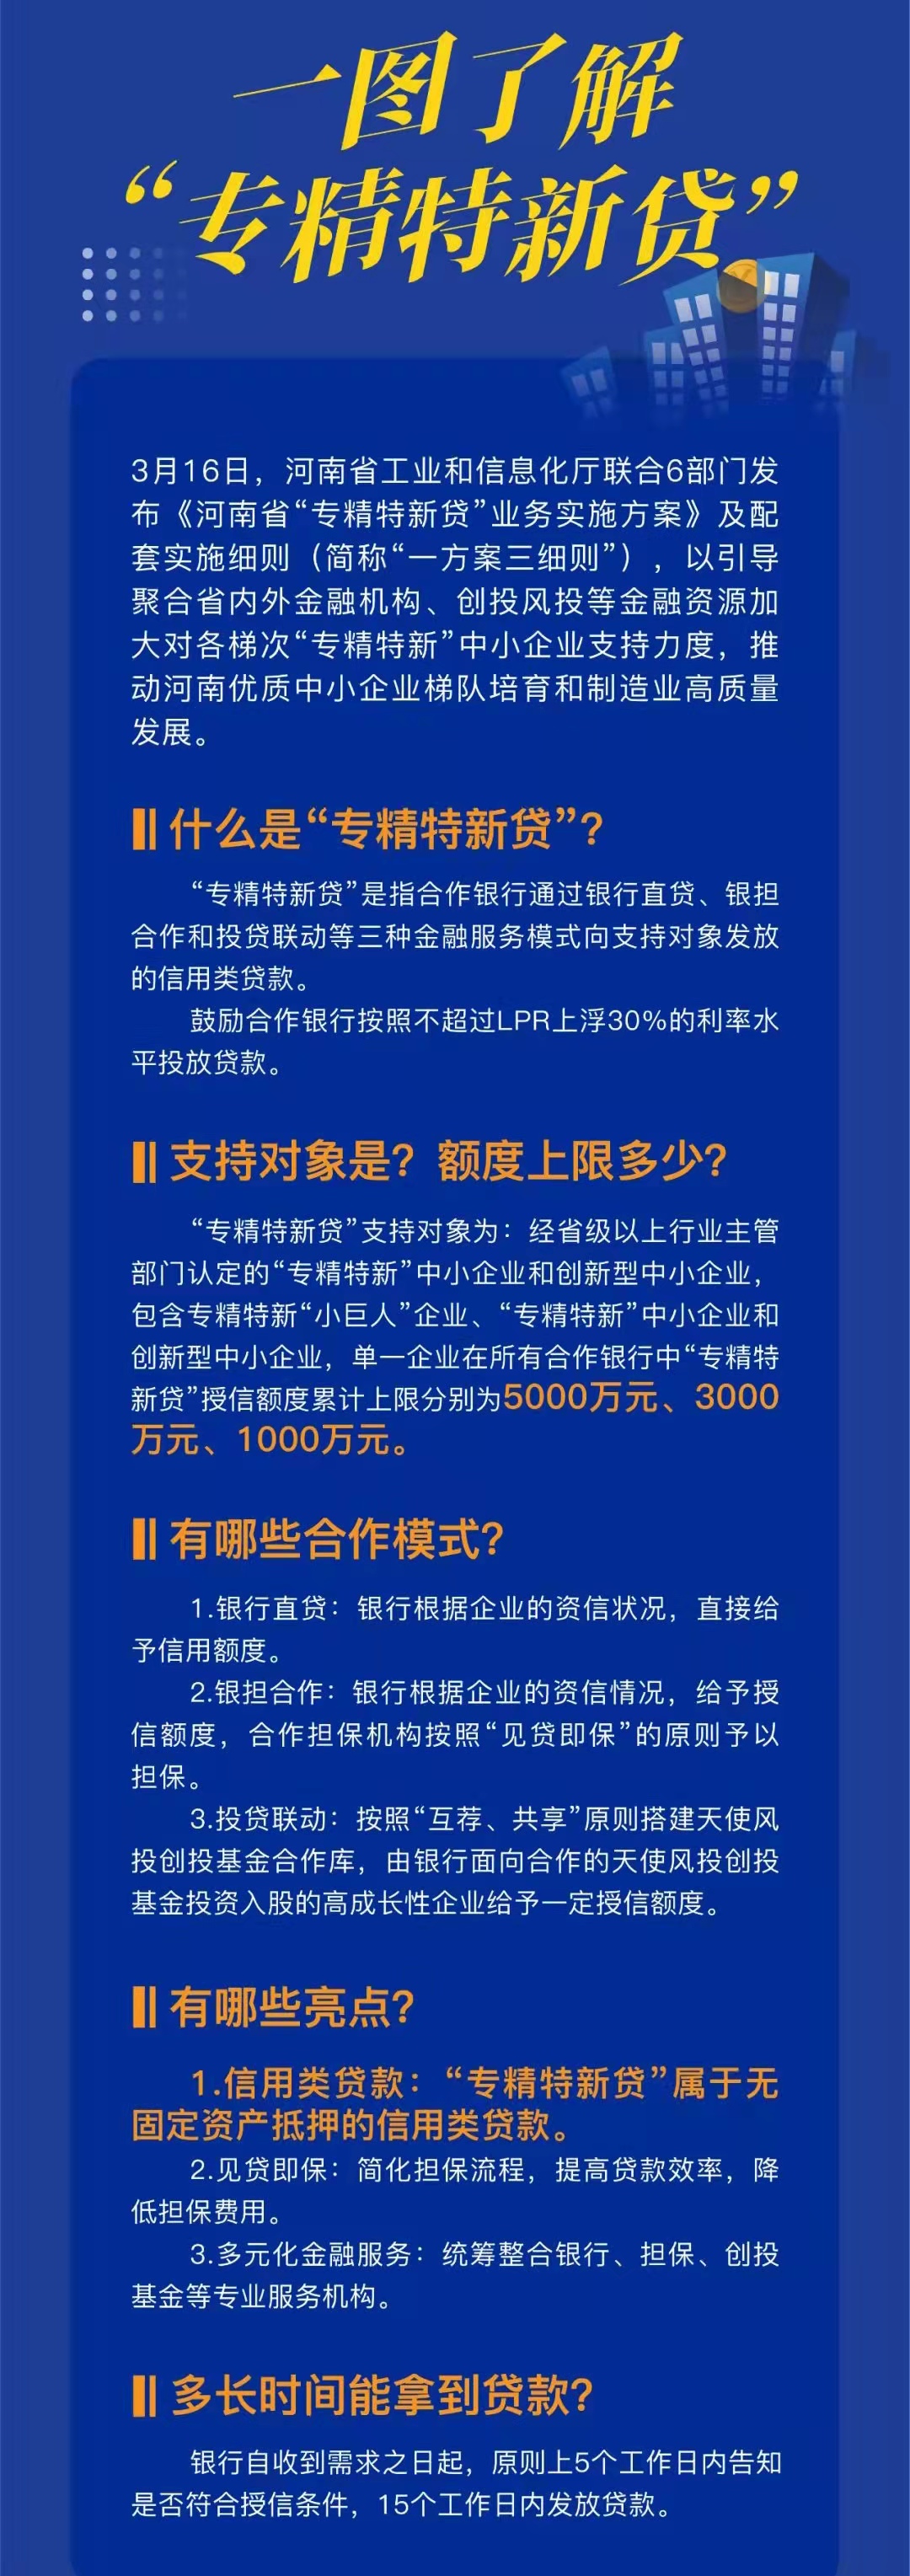 河南省工业和信息化厅政策告知明白卡一图了解专精特新贷